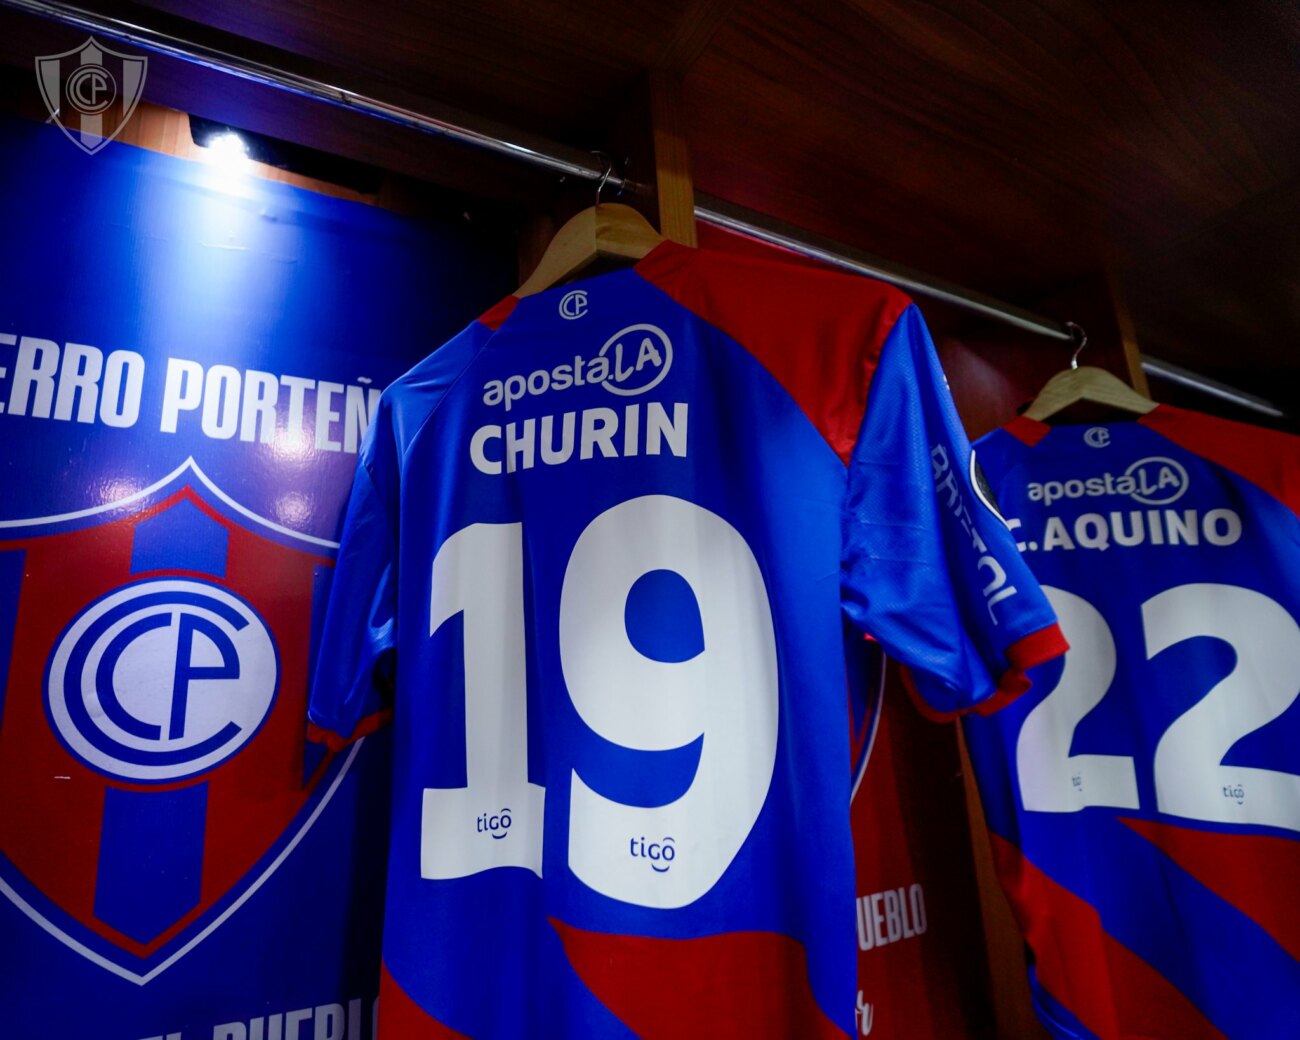 Club Cerro Porteño on X: 📋 Titulares Cerro Porteño tiene equipo